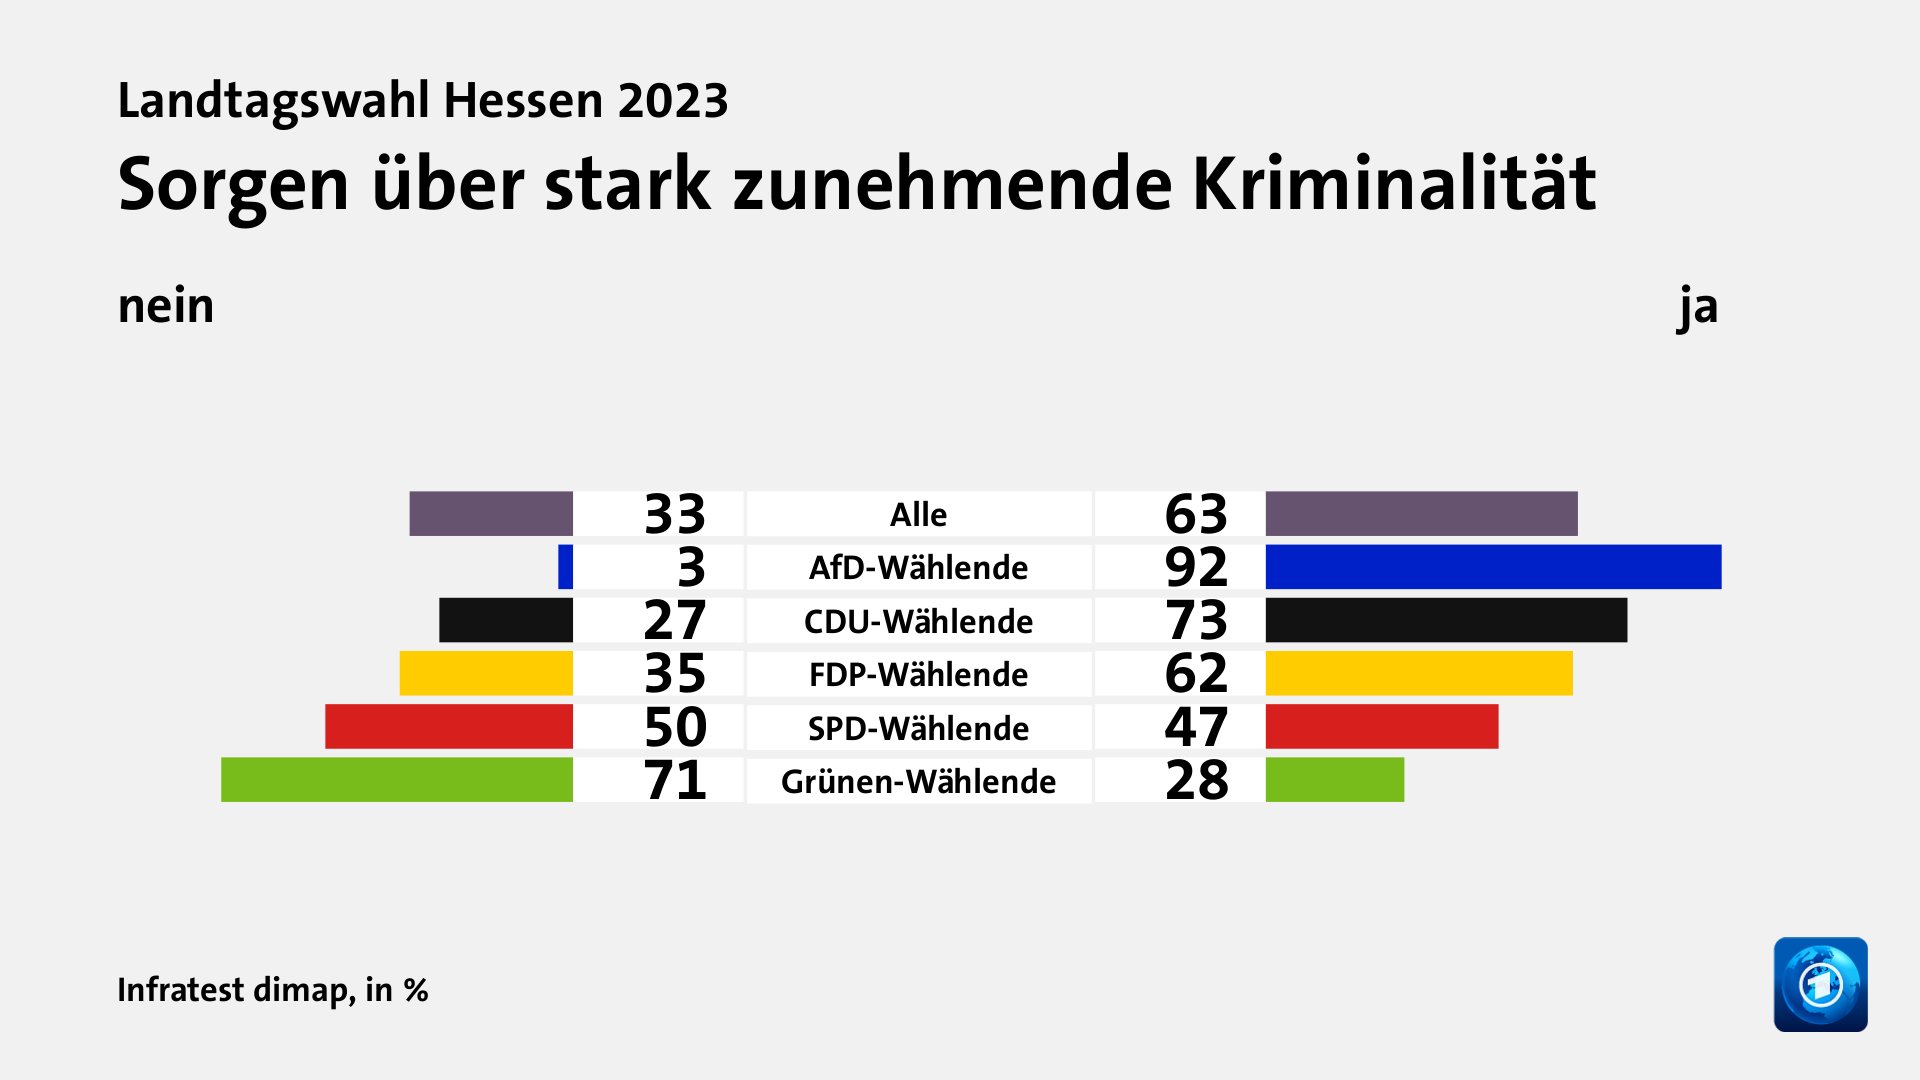 Sorgen über stark zunehmende Kriminalität (in %) Alle: nein 33, ja 63; AfD-Wählende: nein 3, ja 92; CDU-Wählende: nein 27, ja 73; FDP-Wählende: nein 35, ja 62; SPD-Wählende: nein 50, ja 47; Grünen-Wählende: nein 71, ja 28; Quelle: Infratest dimap